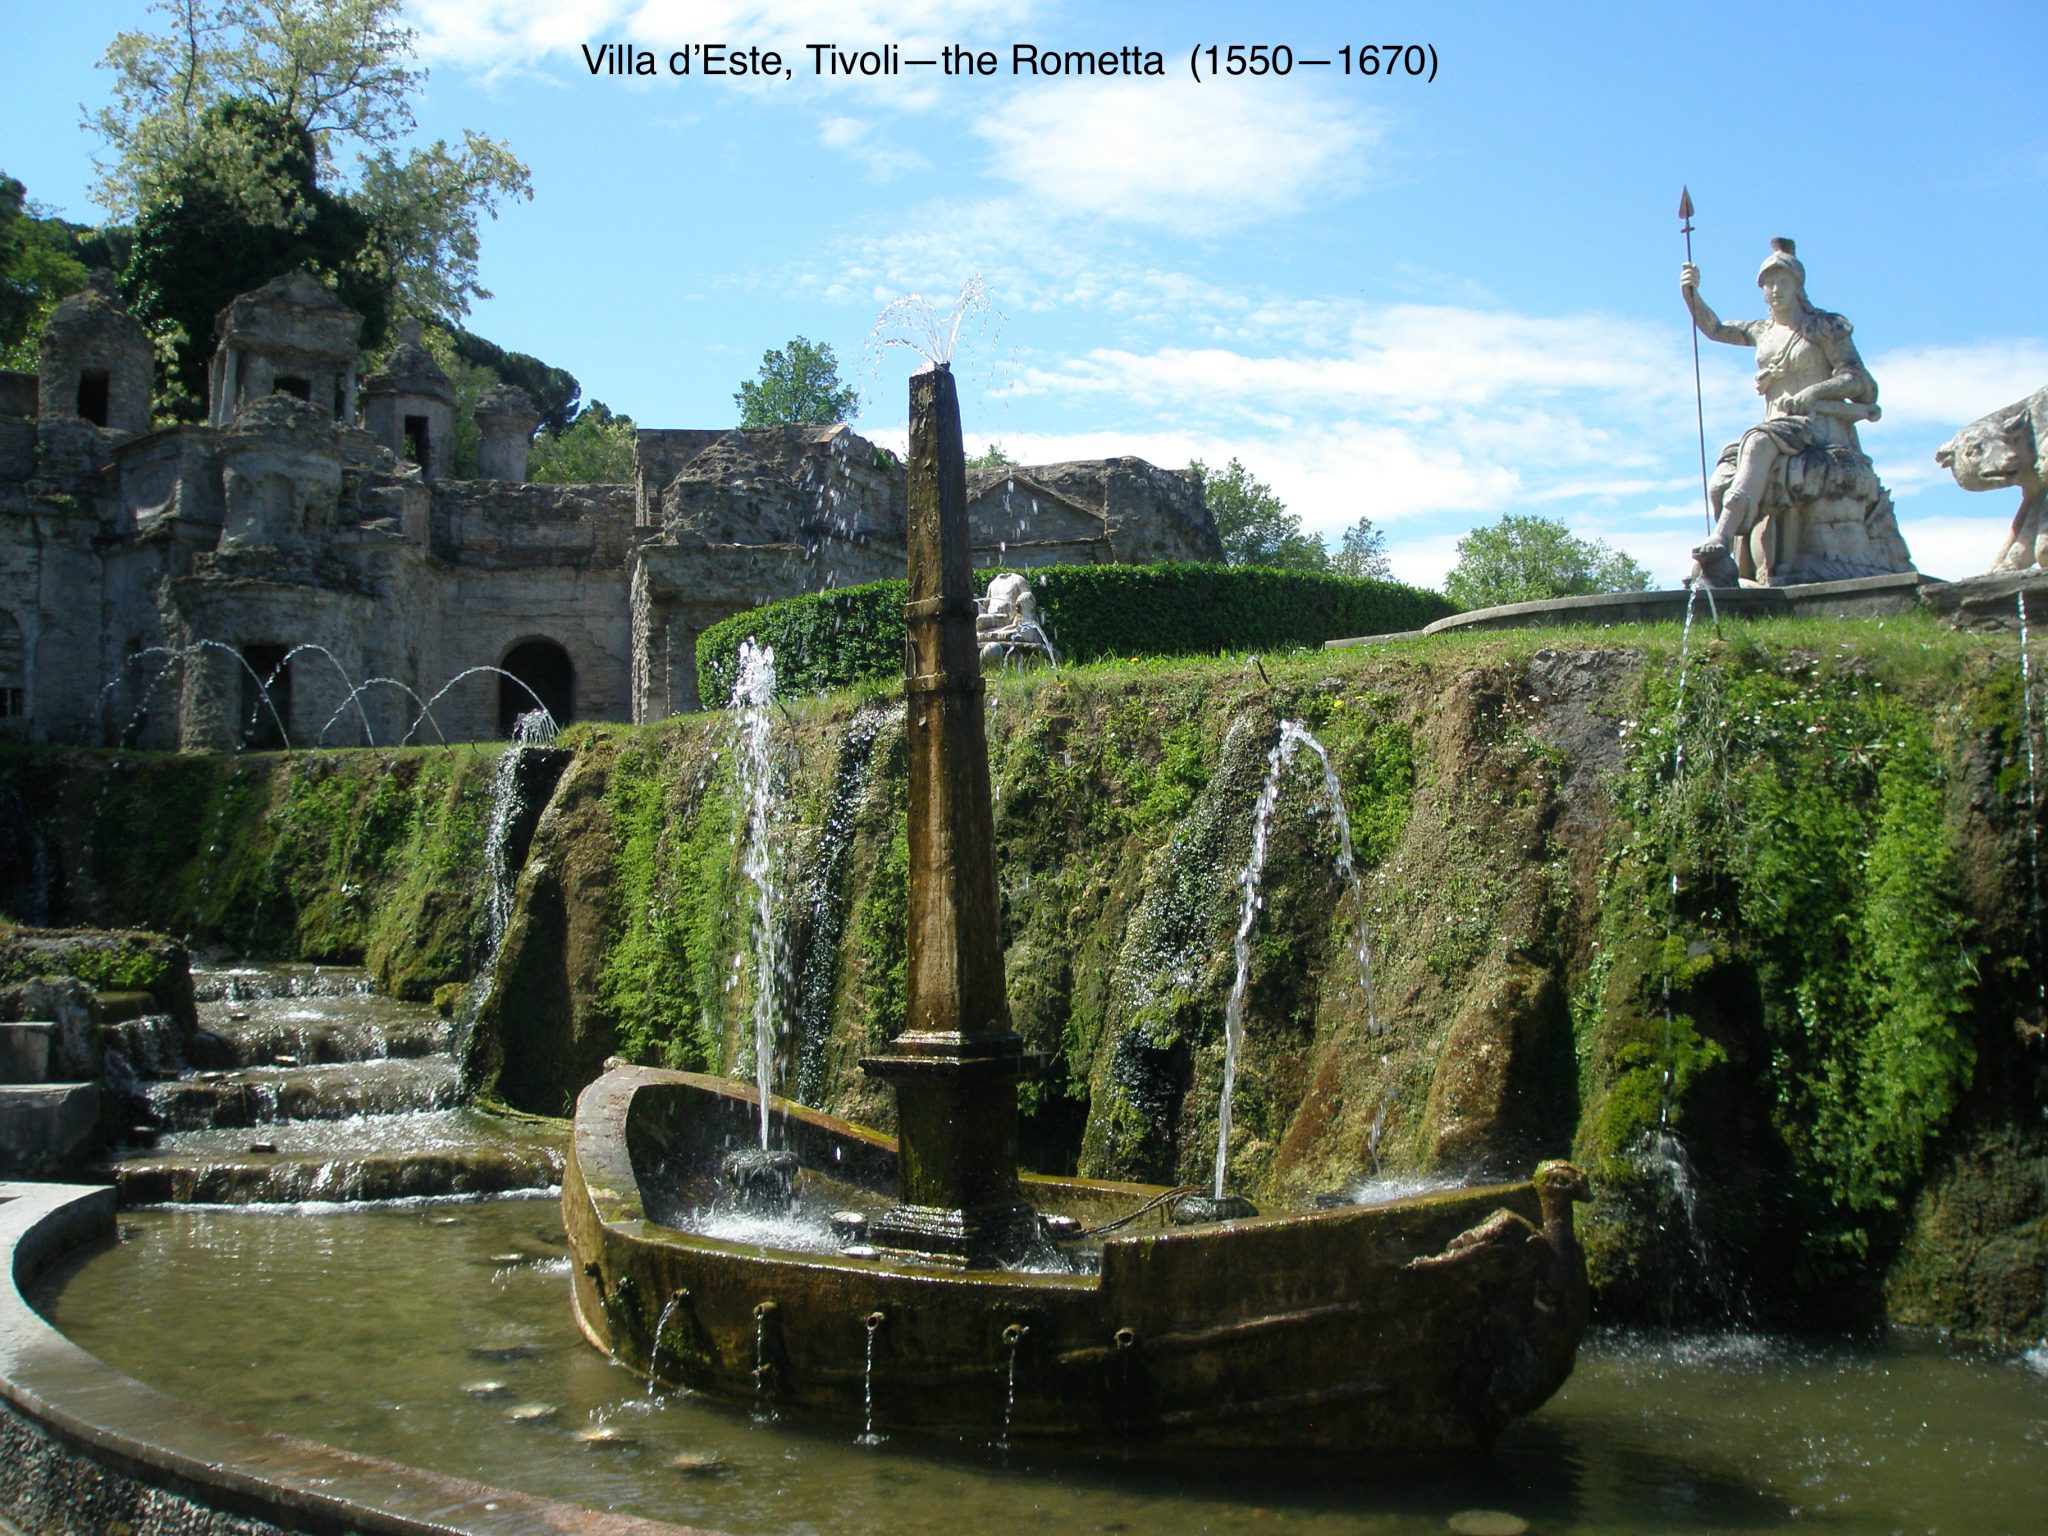 The Rometta, in the gardens of Villa d'Este. Tivoli, Italy.